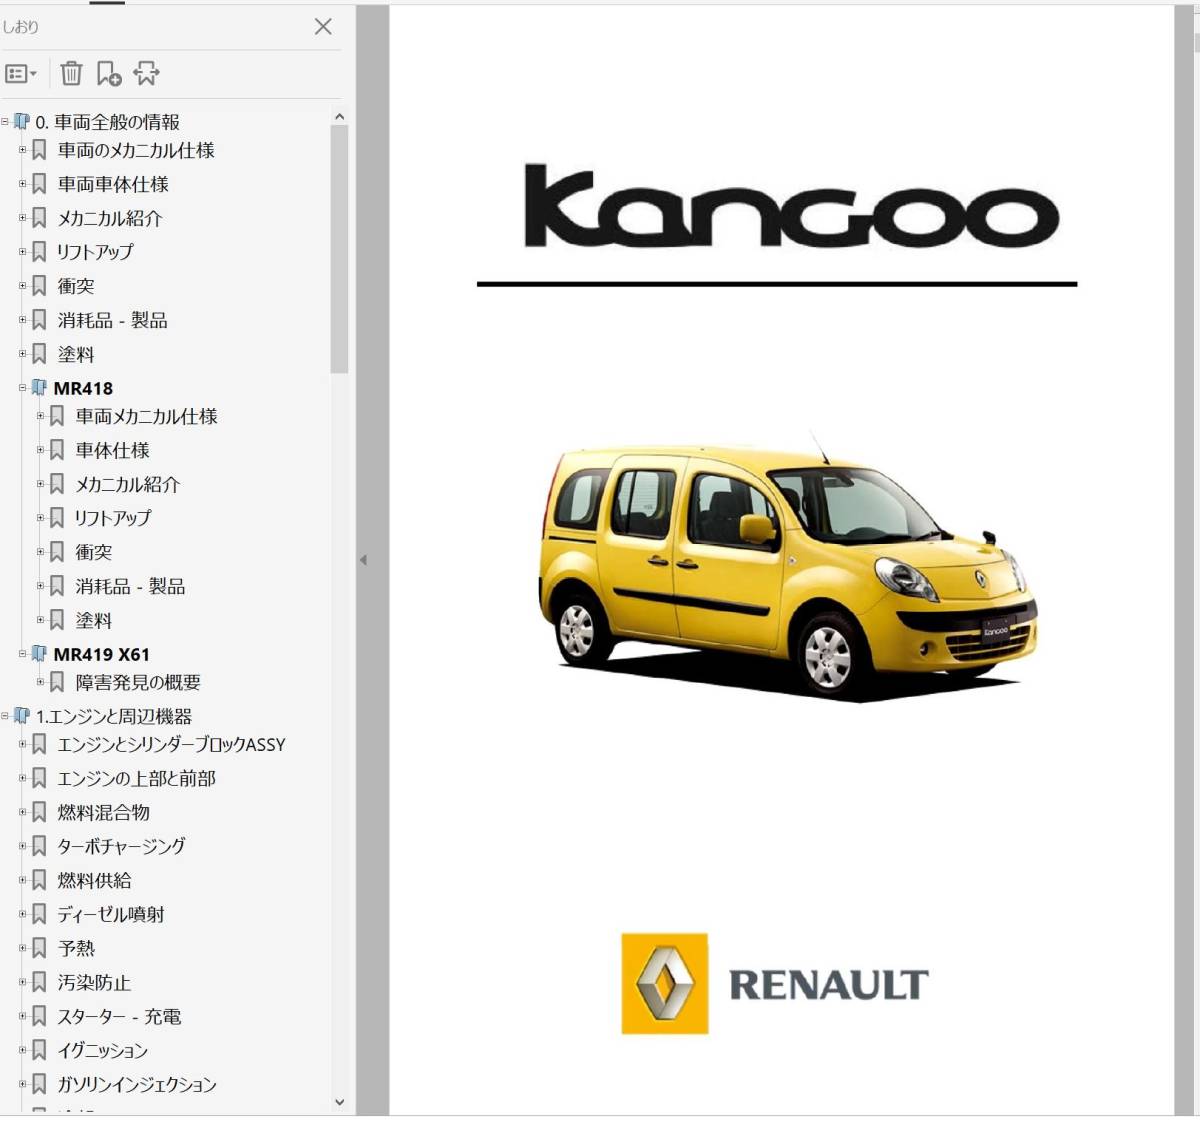 ルノー カングー 2 KanGoo ワークショップマニュアル Ver3 整備書 修理書 マニュアル カングー2 kangoo2 デカングー の画像1